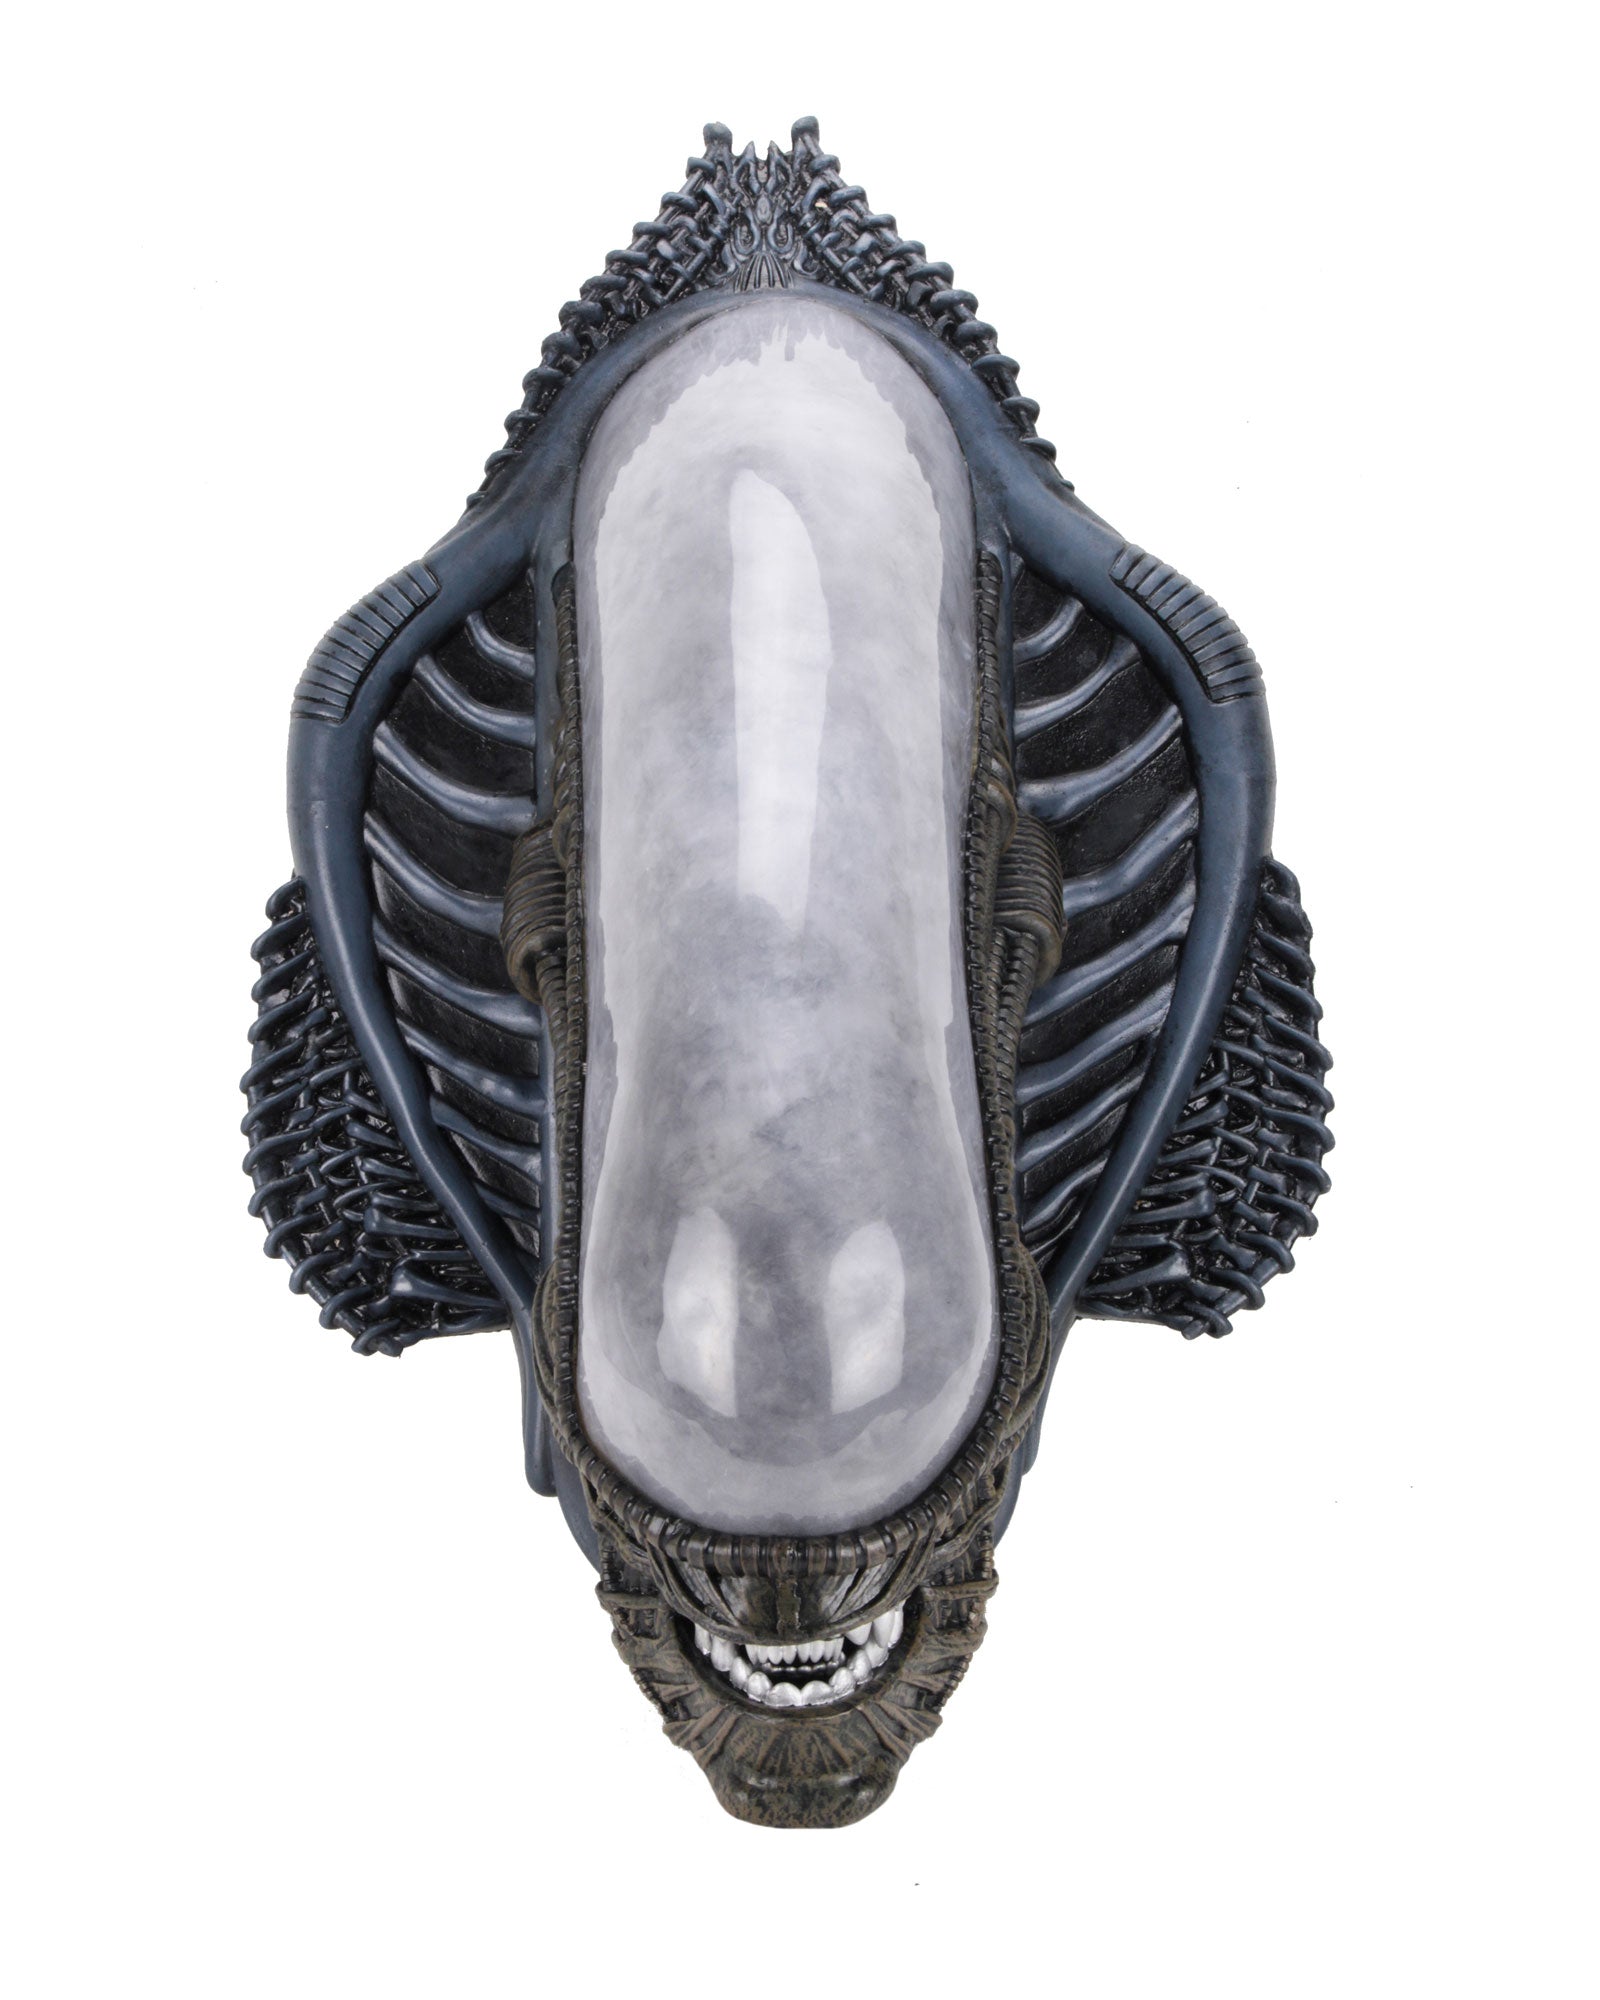 Alien Xenomorph Trophy Plaque